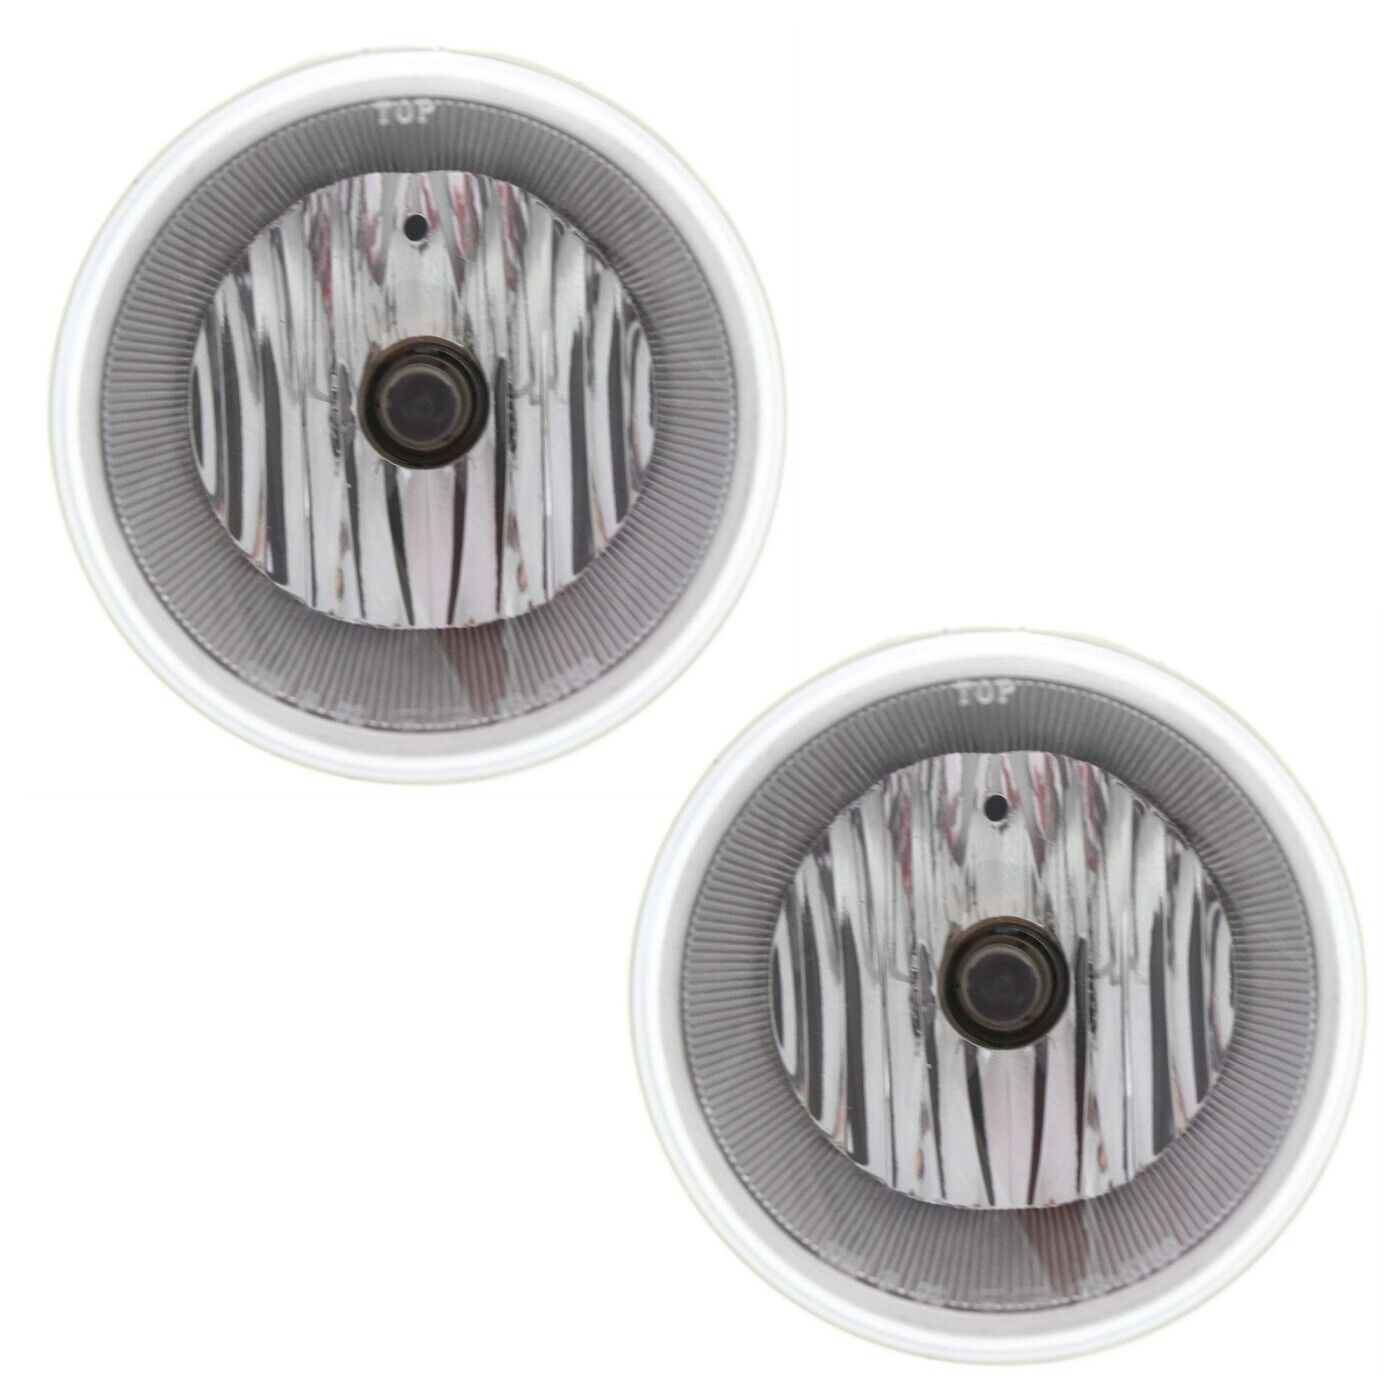 Set of 2 Clear Lens Fog Light For 2005-08 Chrysler 300 LH & RH w/ Bulbs